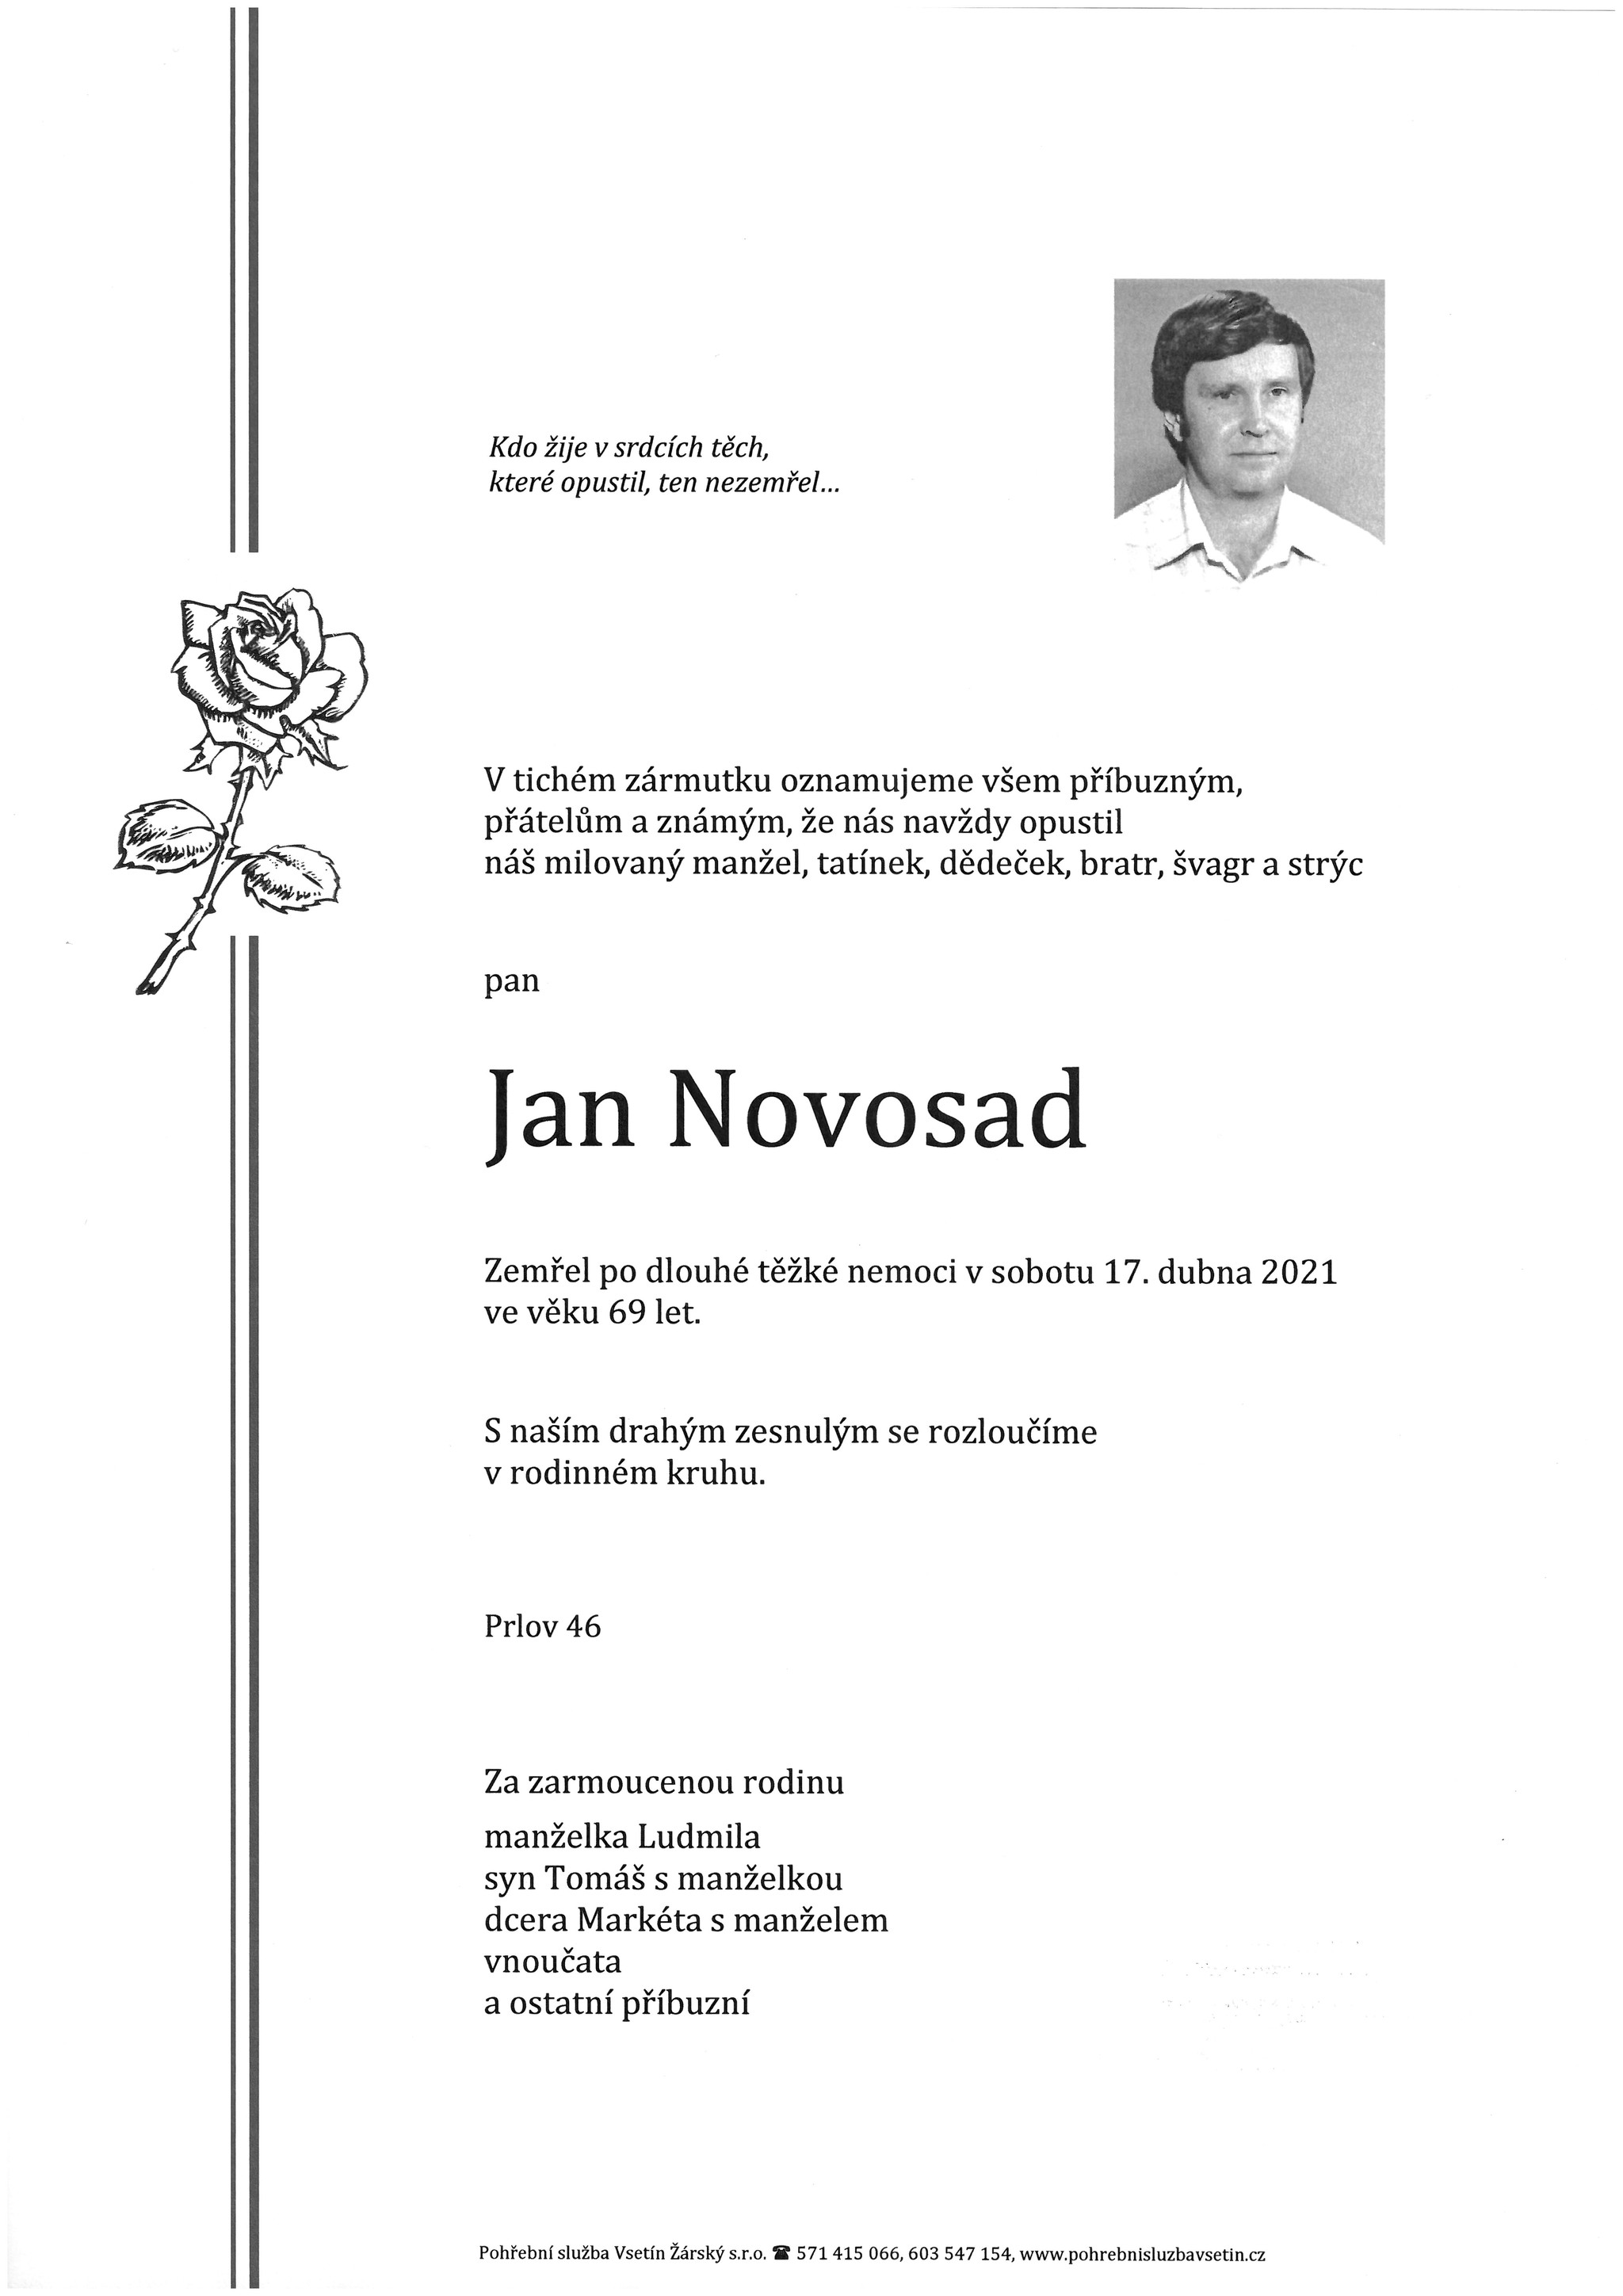 Jan Novosad